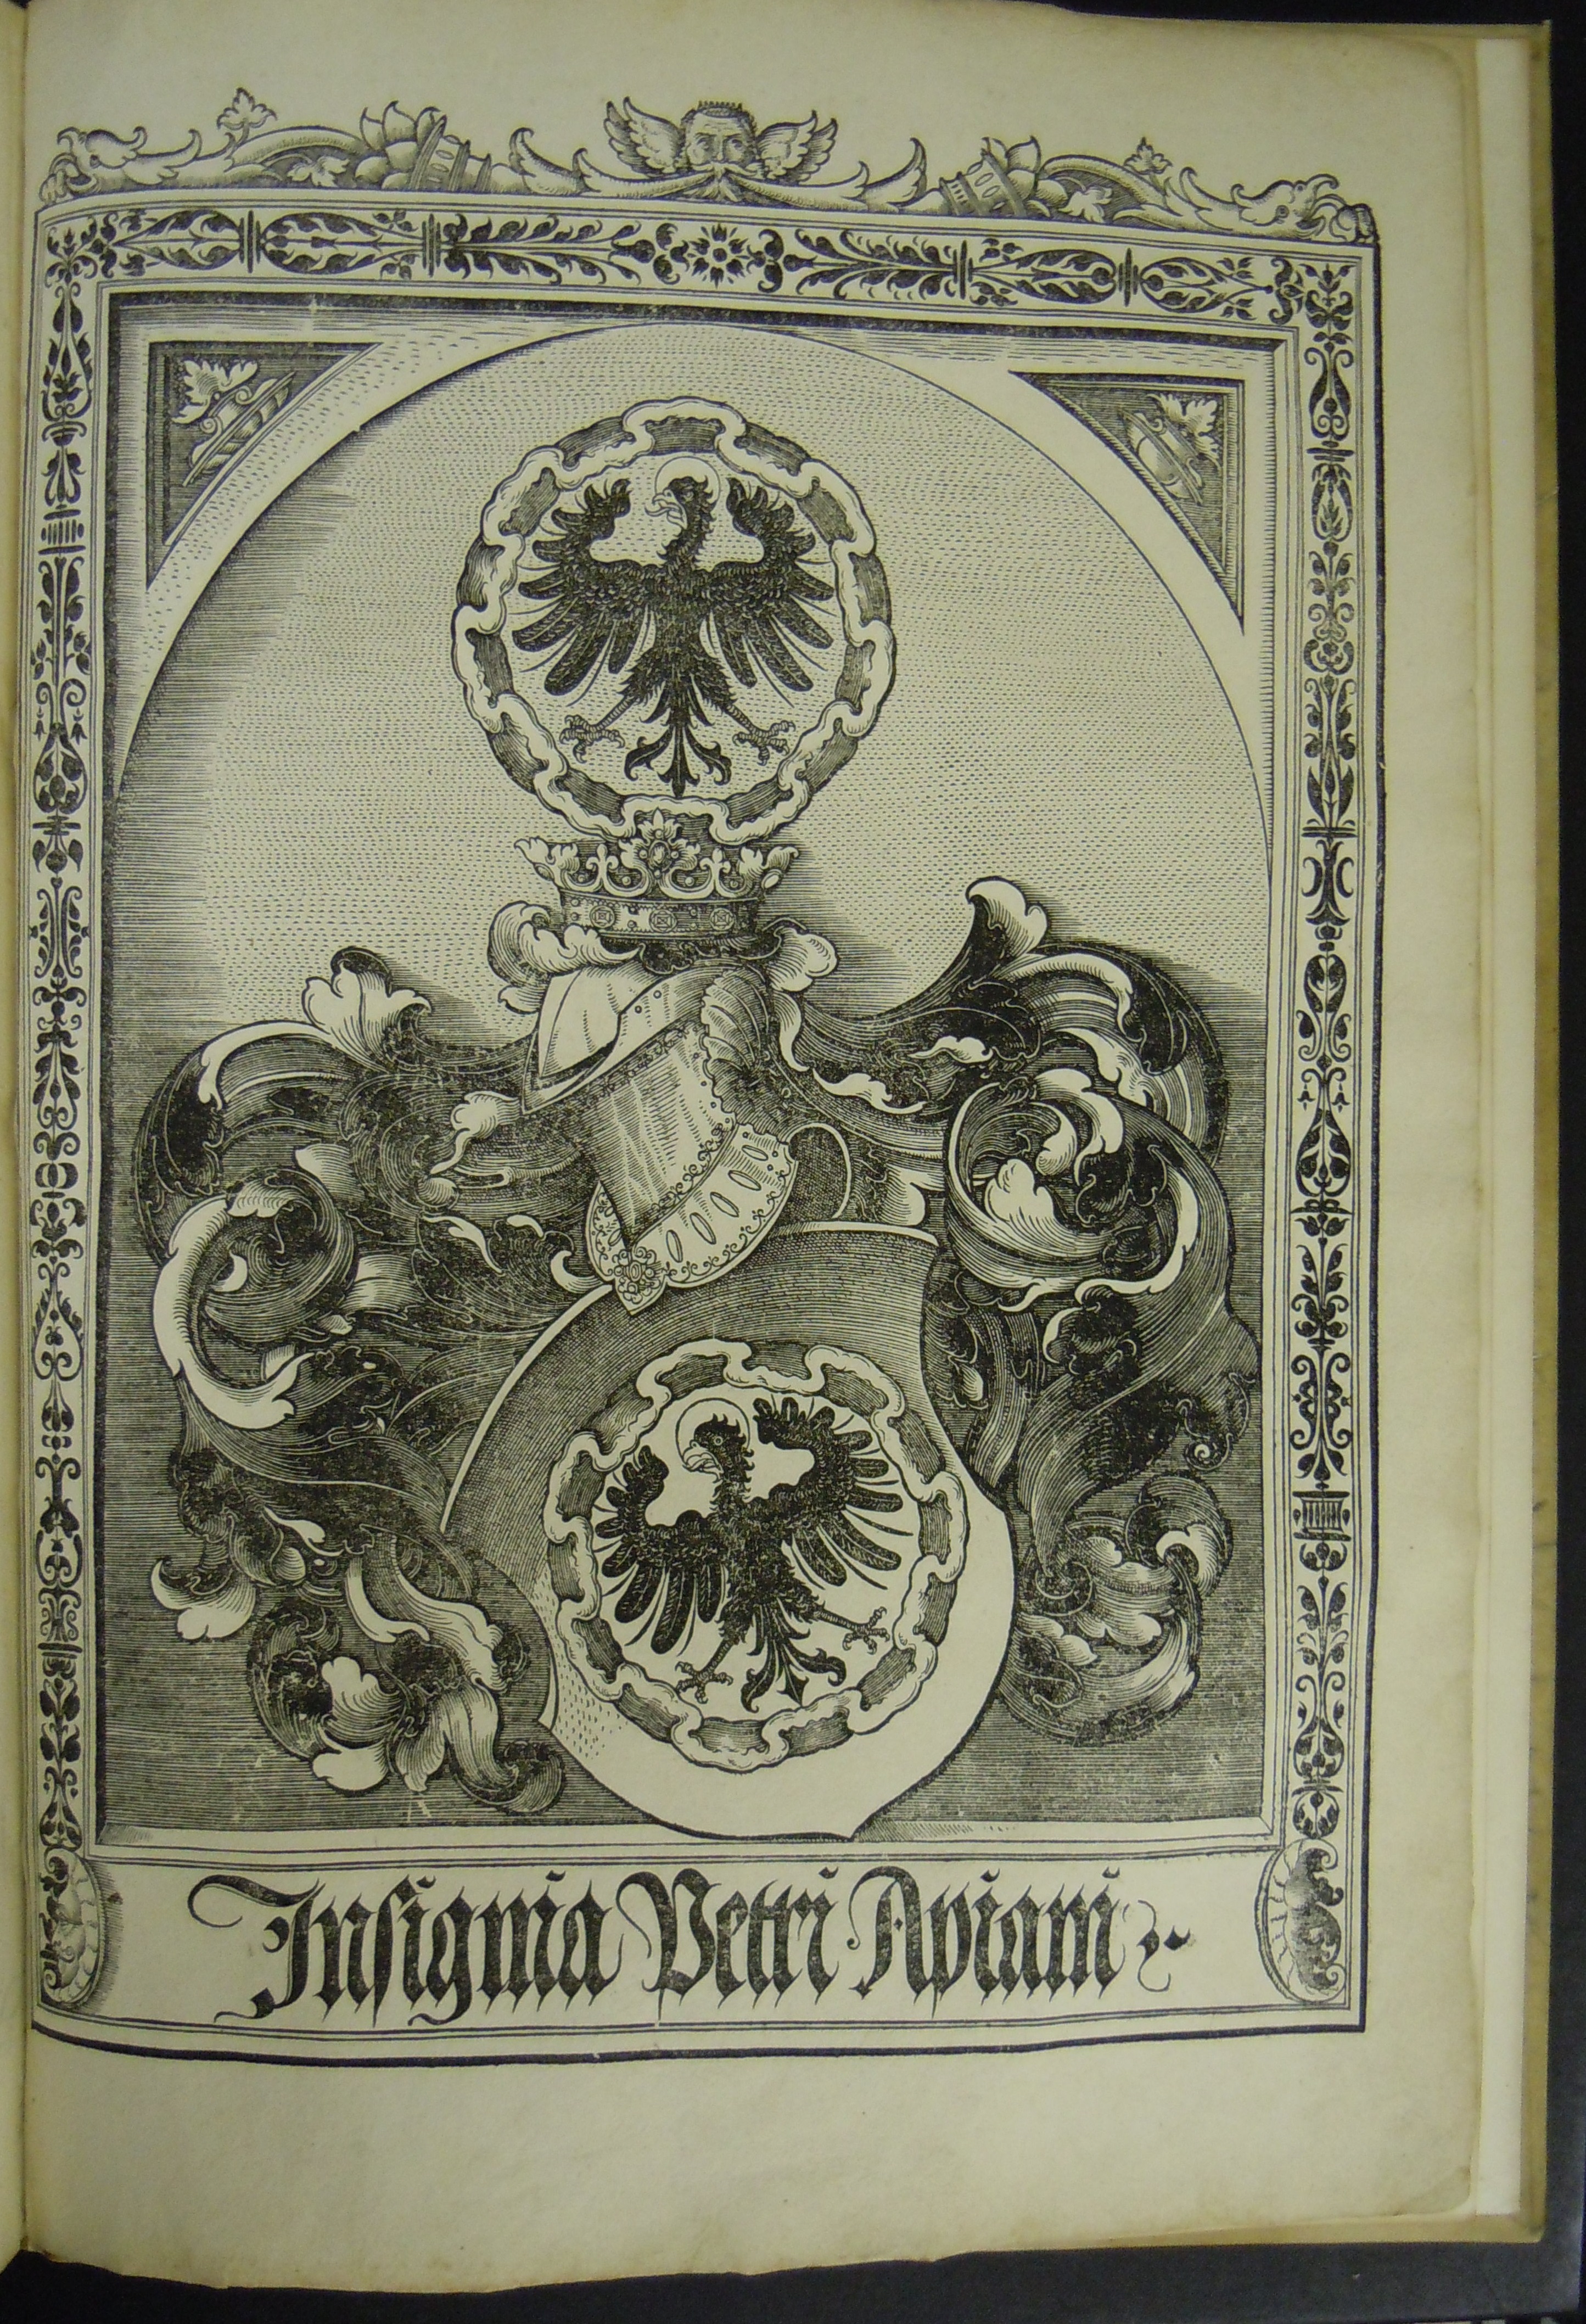 BT1.70.2, final leaf, Apian’s coat of arms, Peter Apian’s Astronomicum Caesareum (1540)